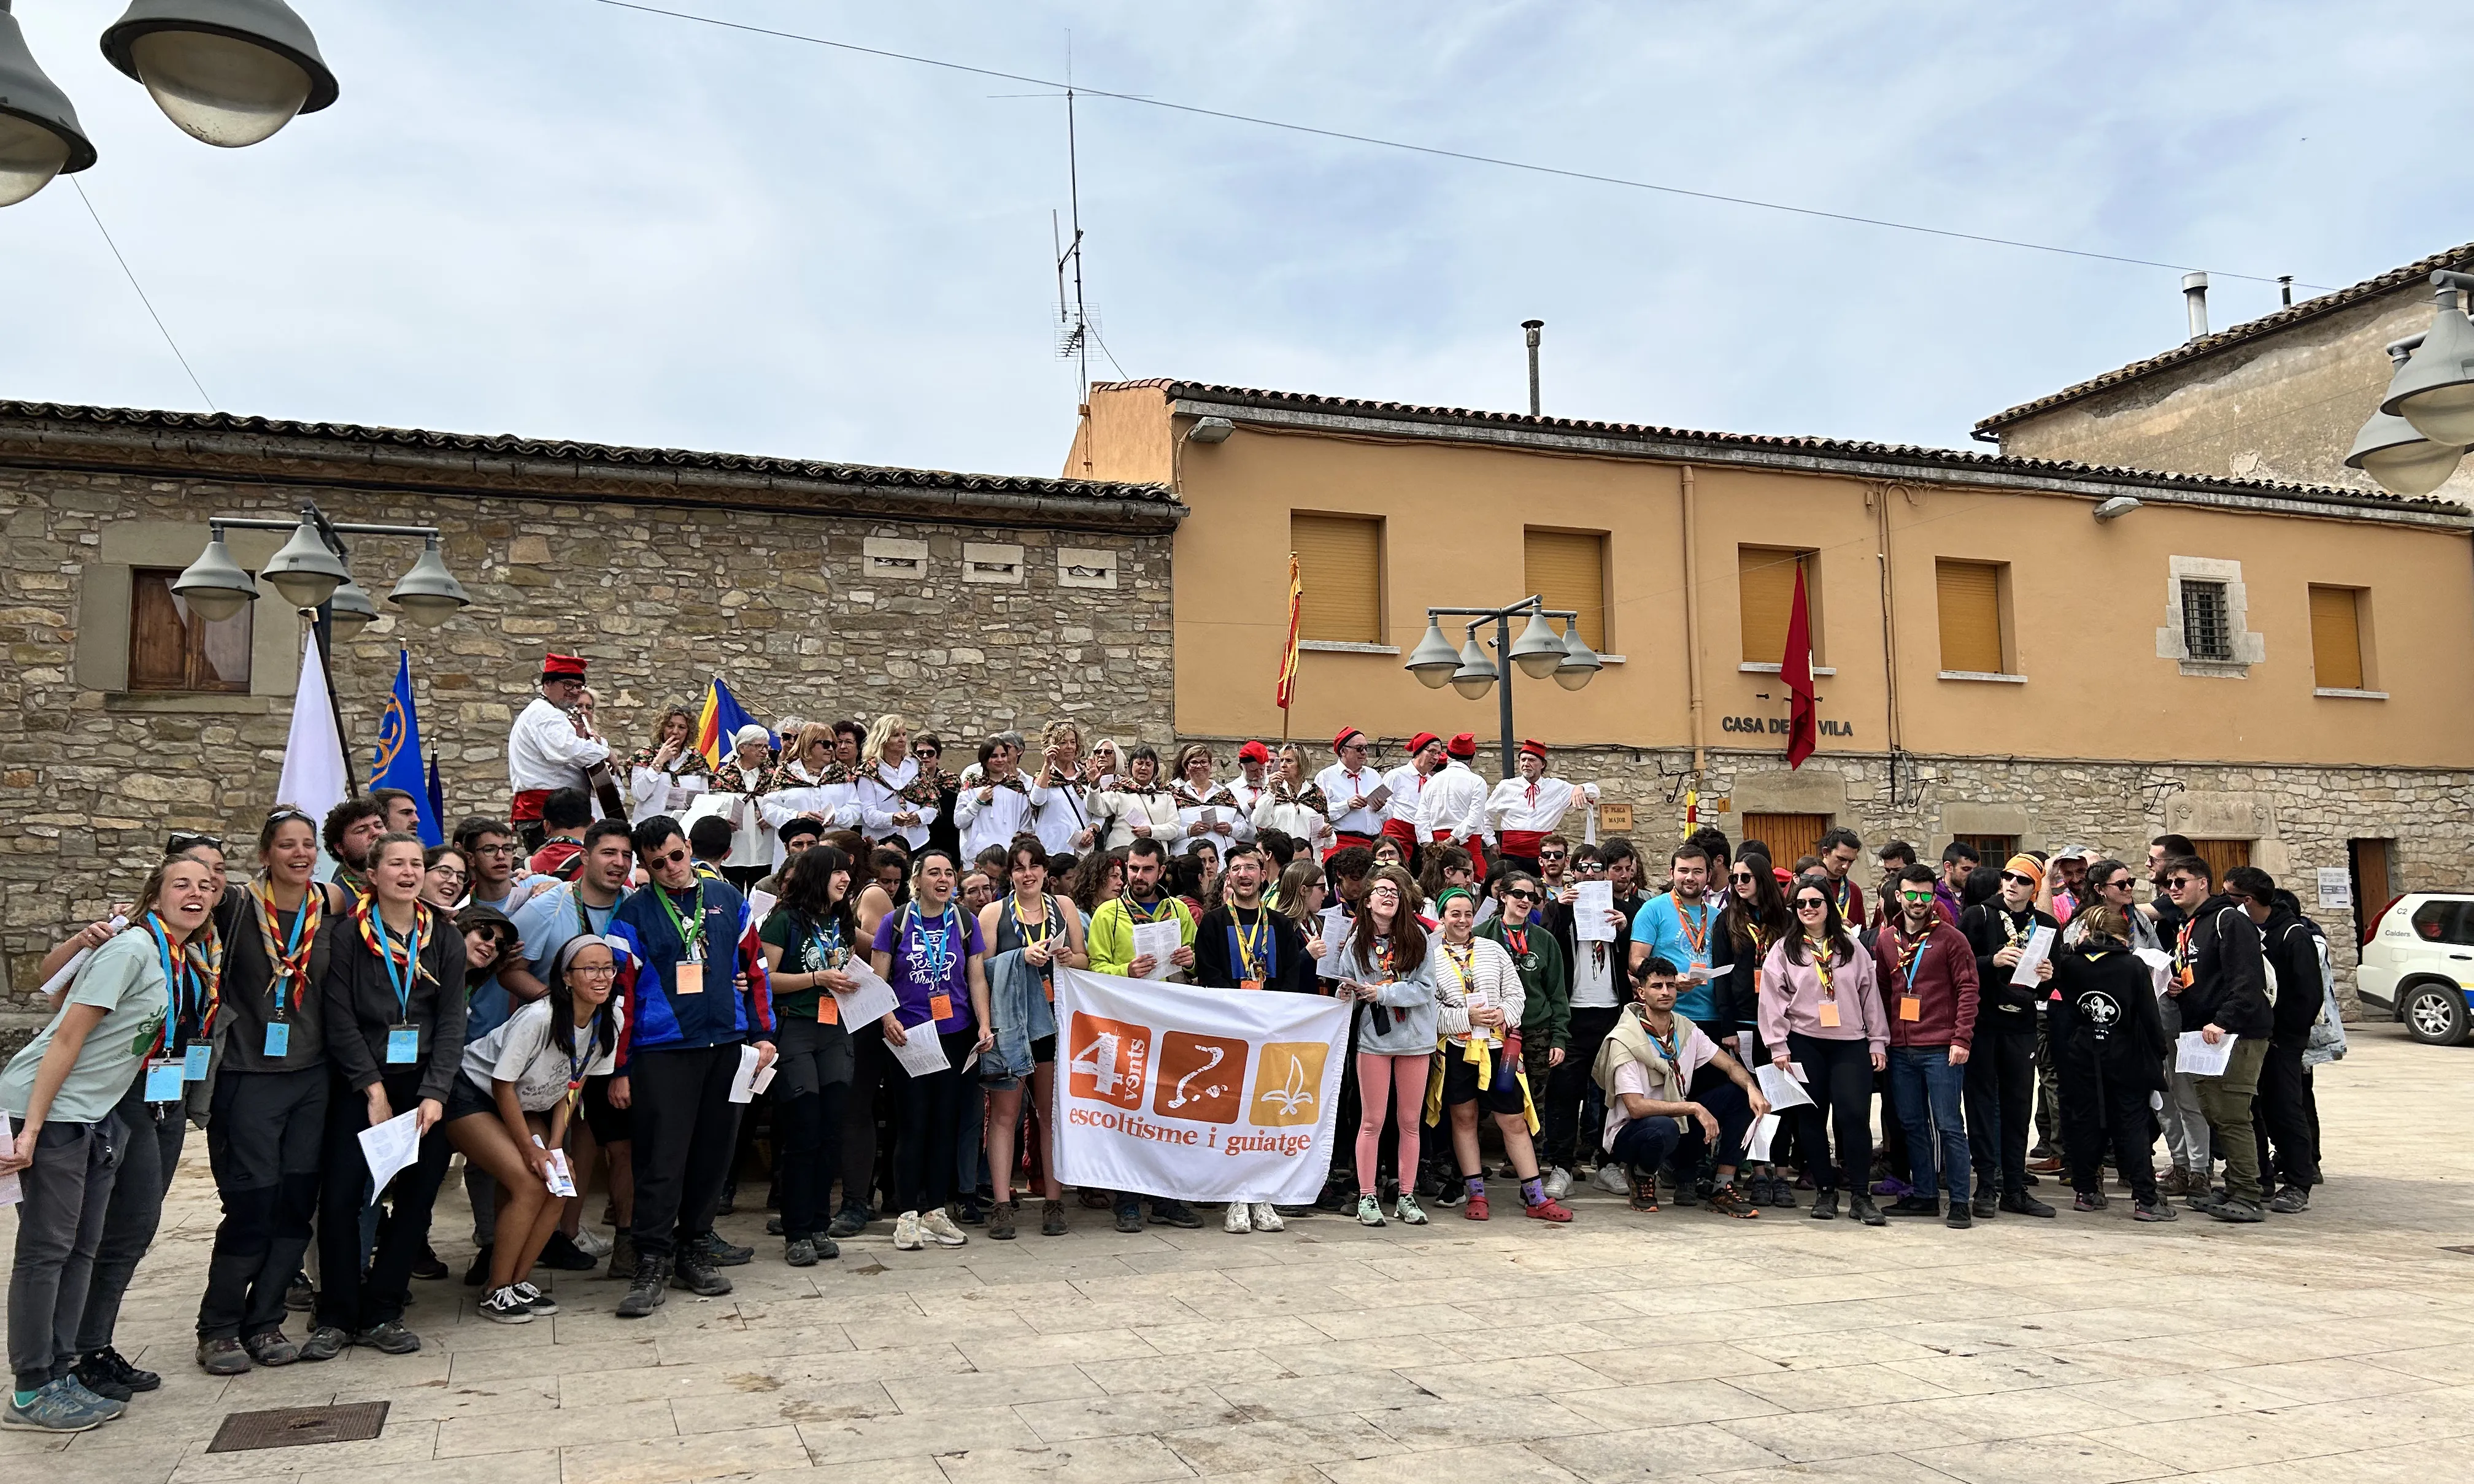 4vents també té en marxa 'La Bullanguera', una trobada de caps a Mallorca.